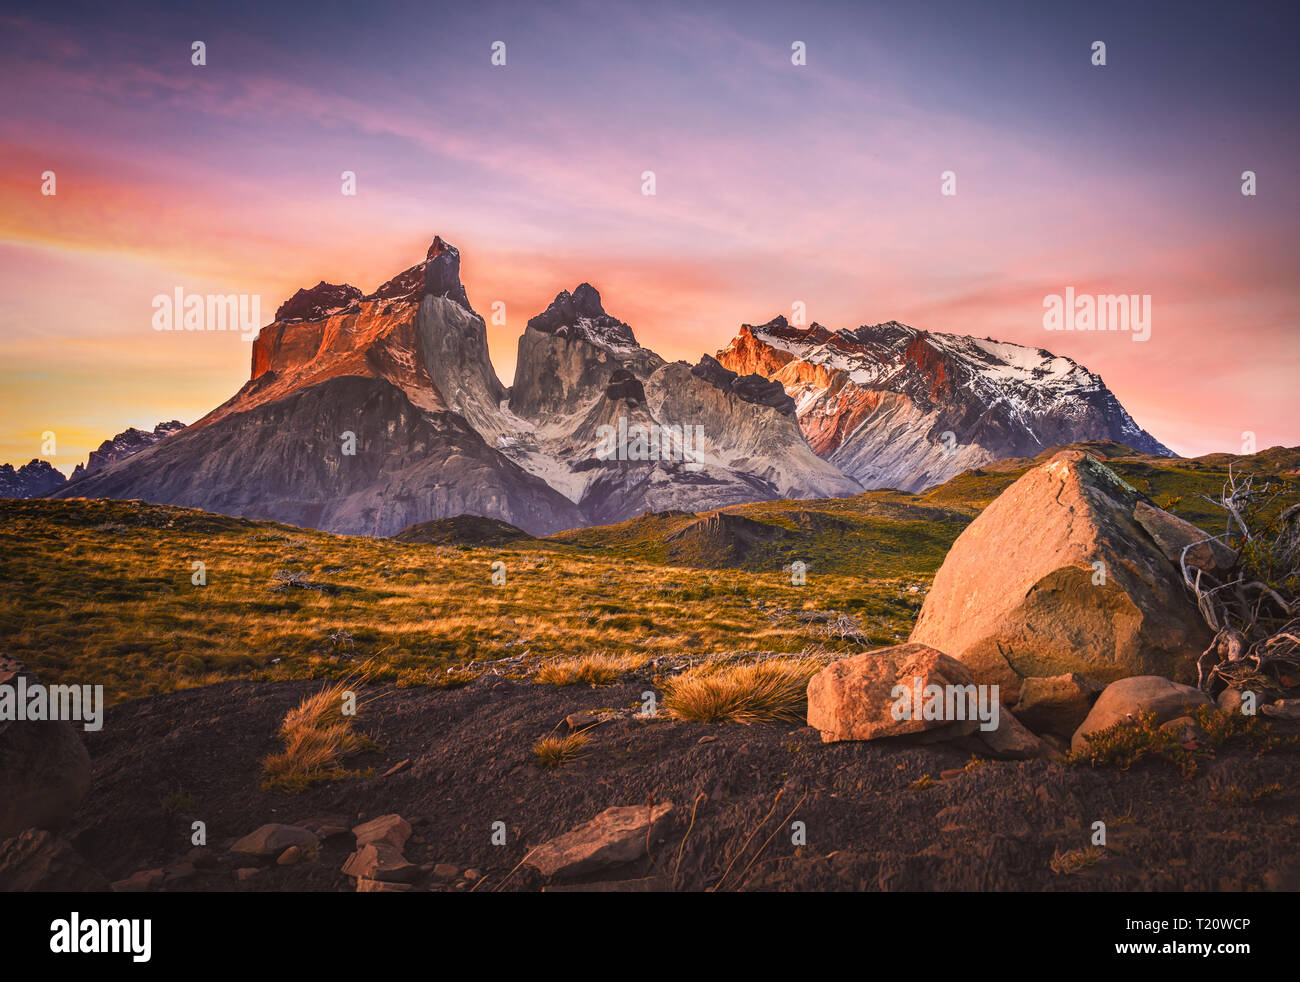 La bellissima alba in Patagonia Cile Parco Nazionale Torres del Paine con un bel cielo colorato Foto Stock